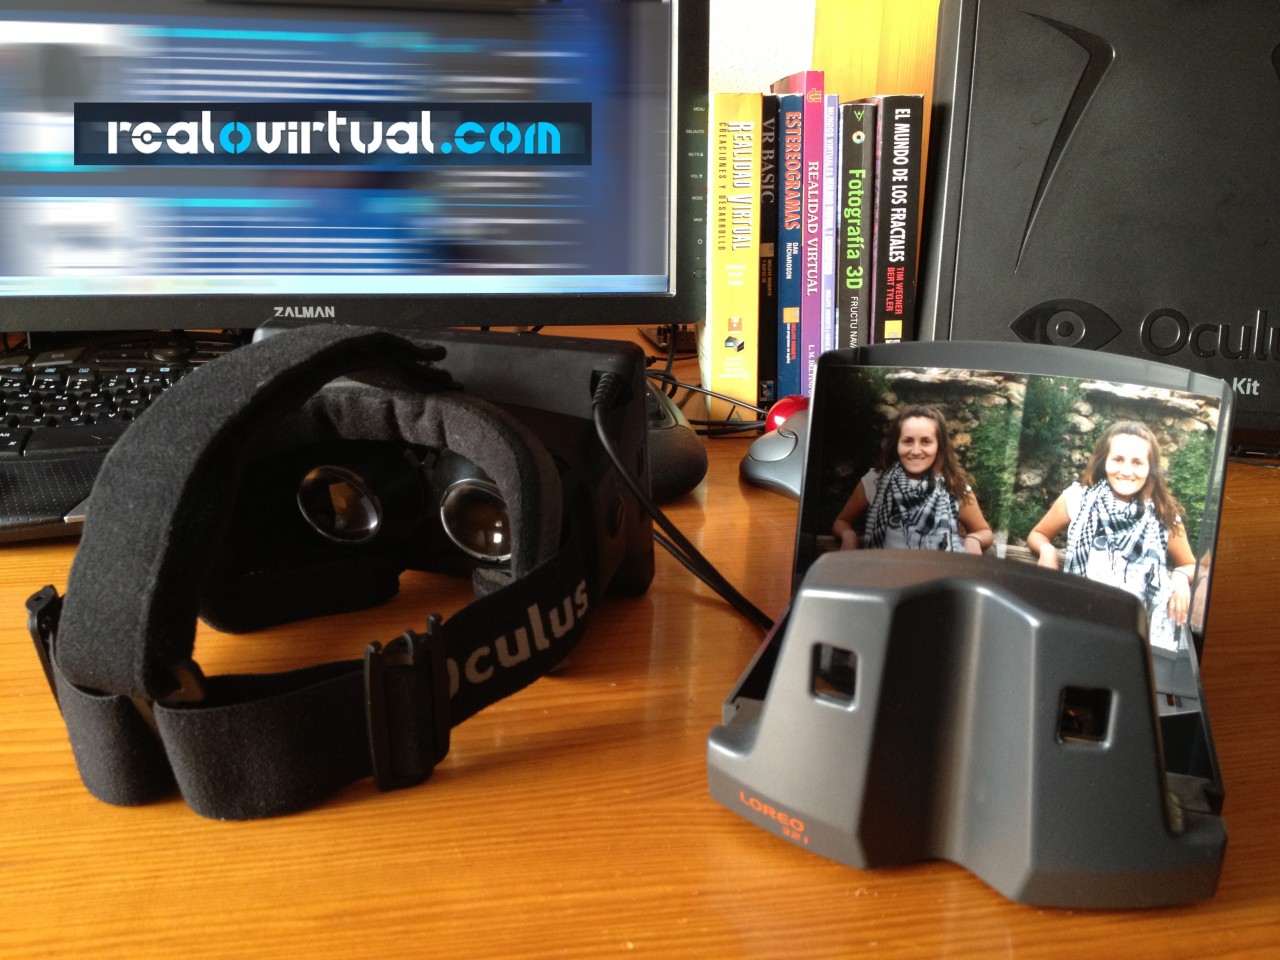 Similitudes entre el Oculus Rift y un estereoscopio moderno